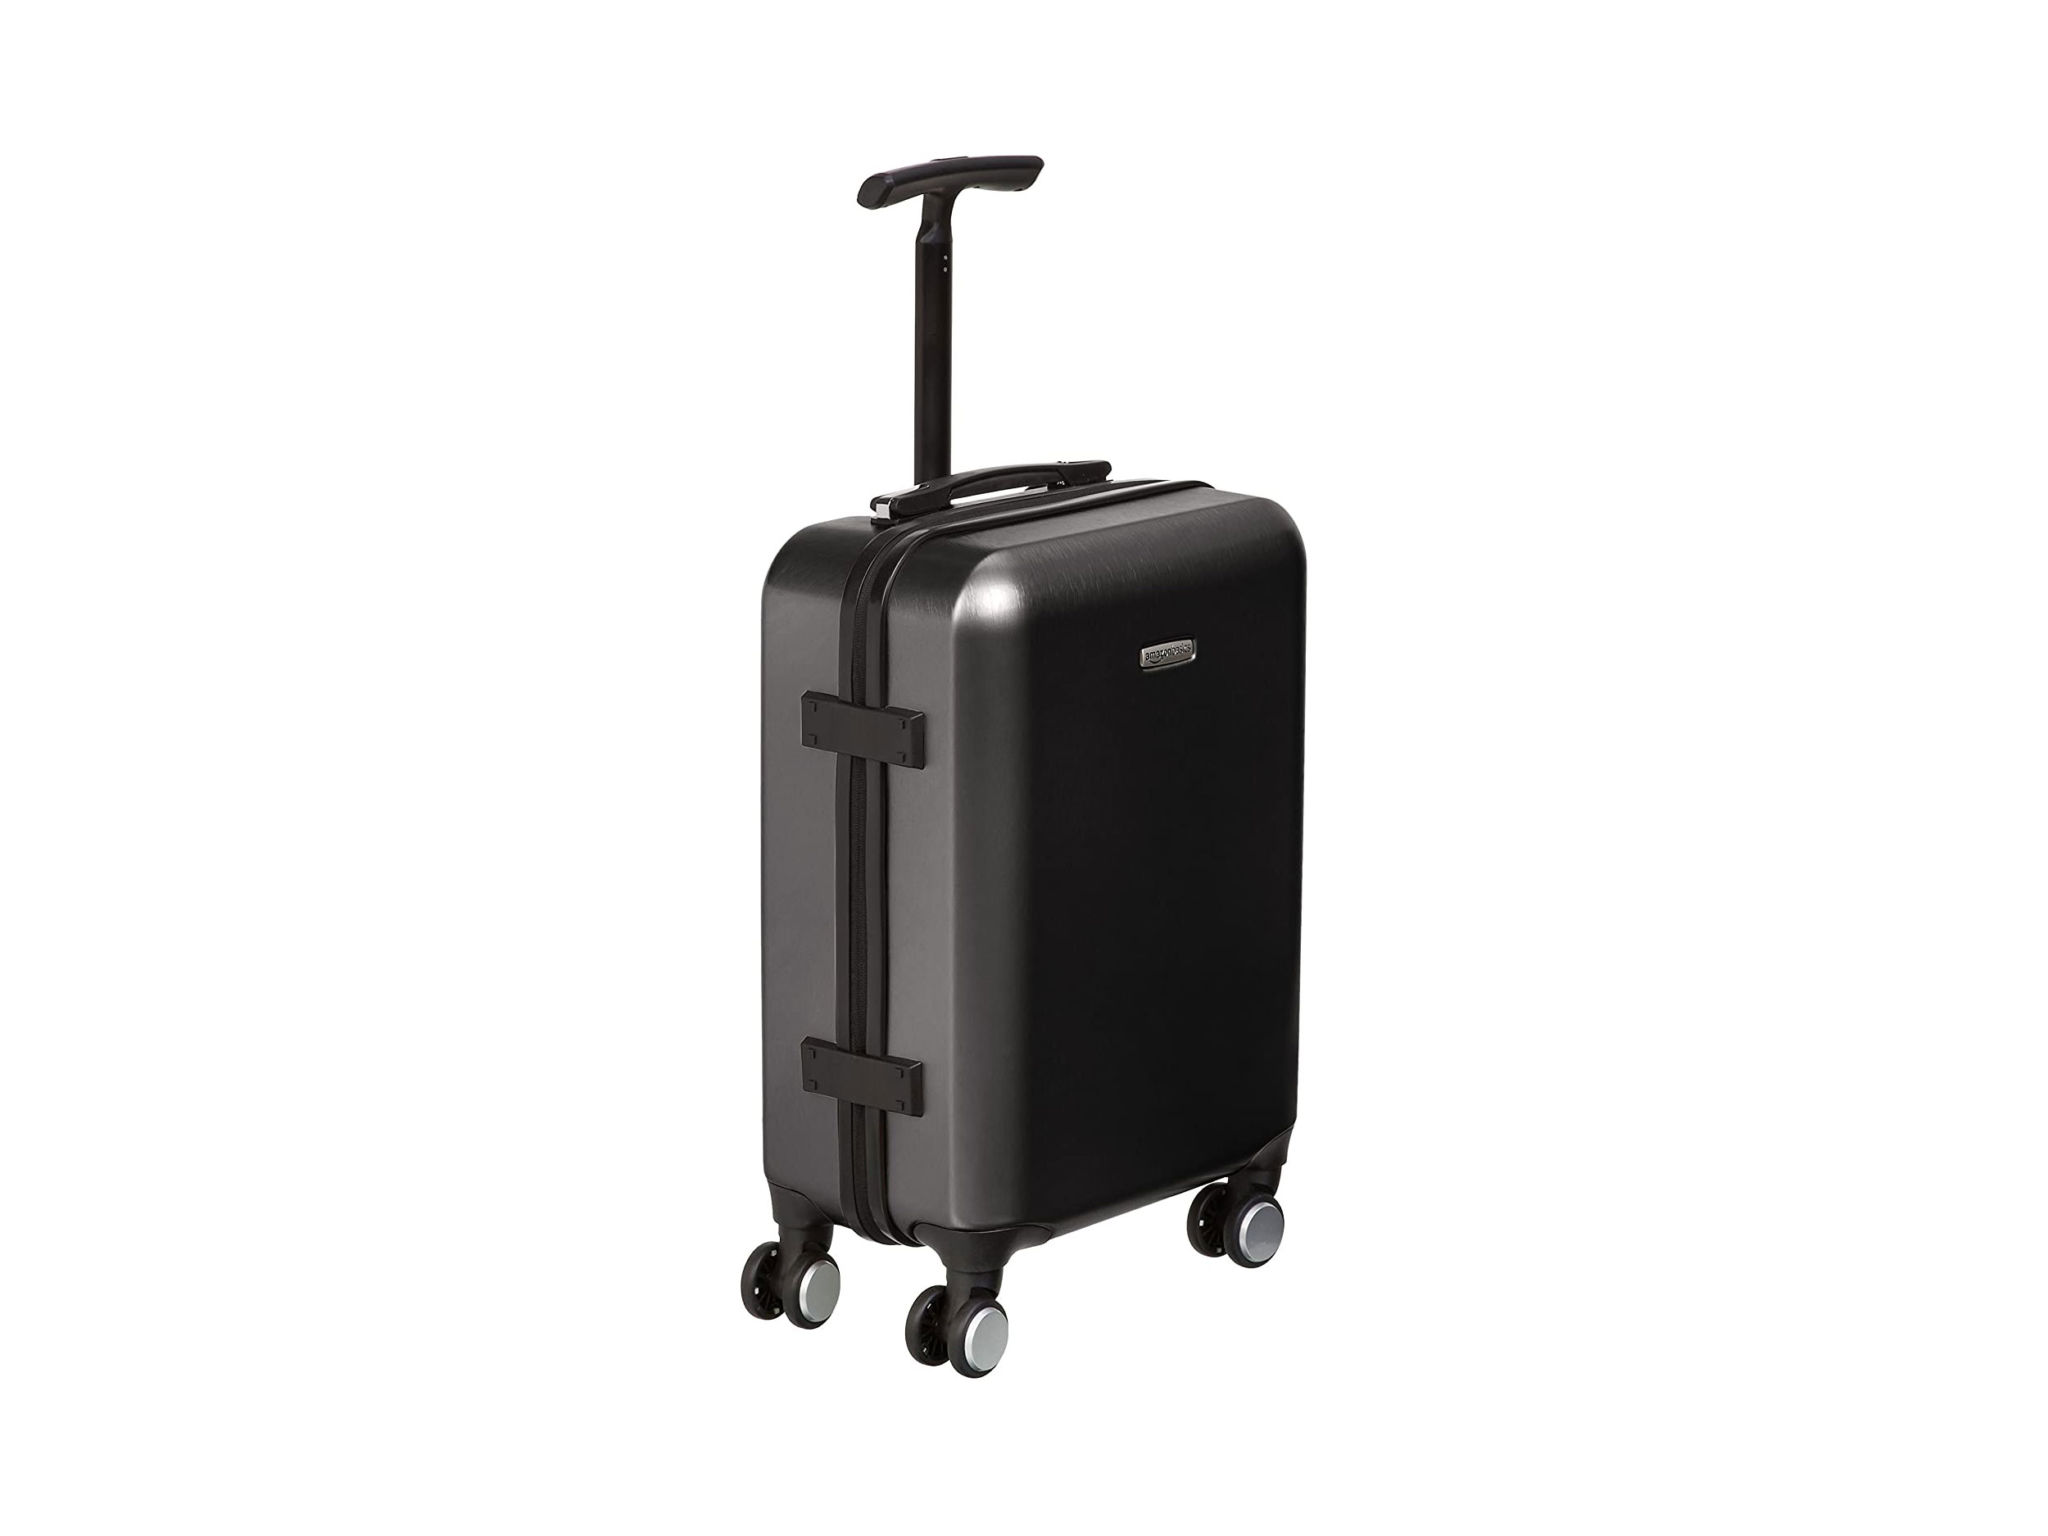 Amazon Basics Hardshell Spinner Suitcase with Built-In TSA Lock